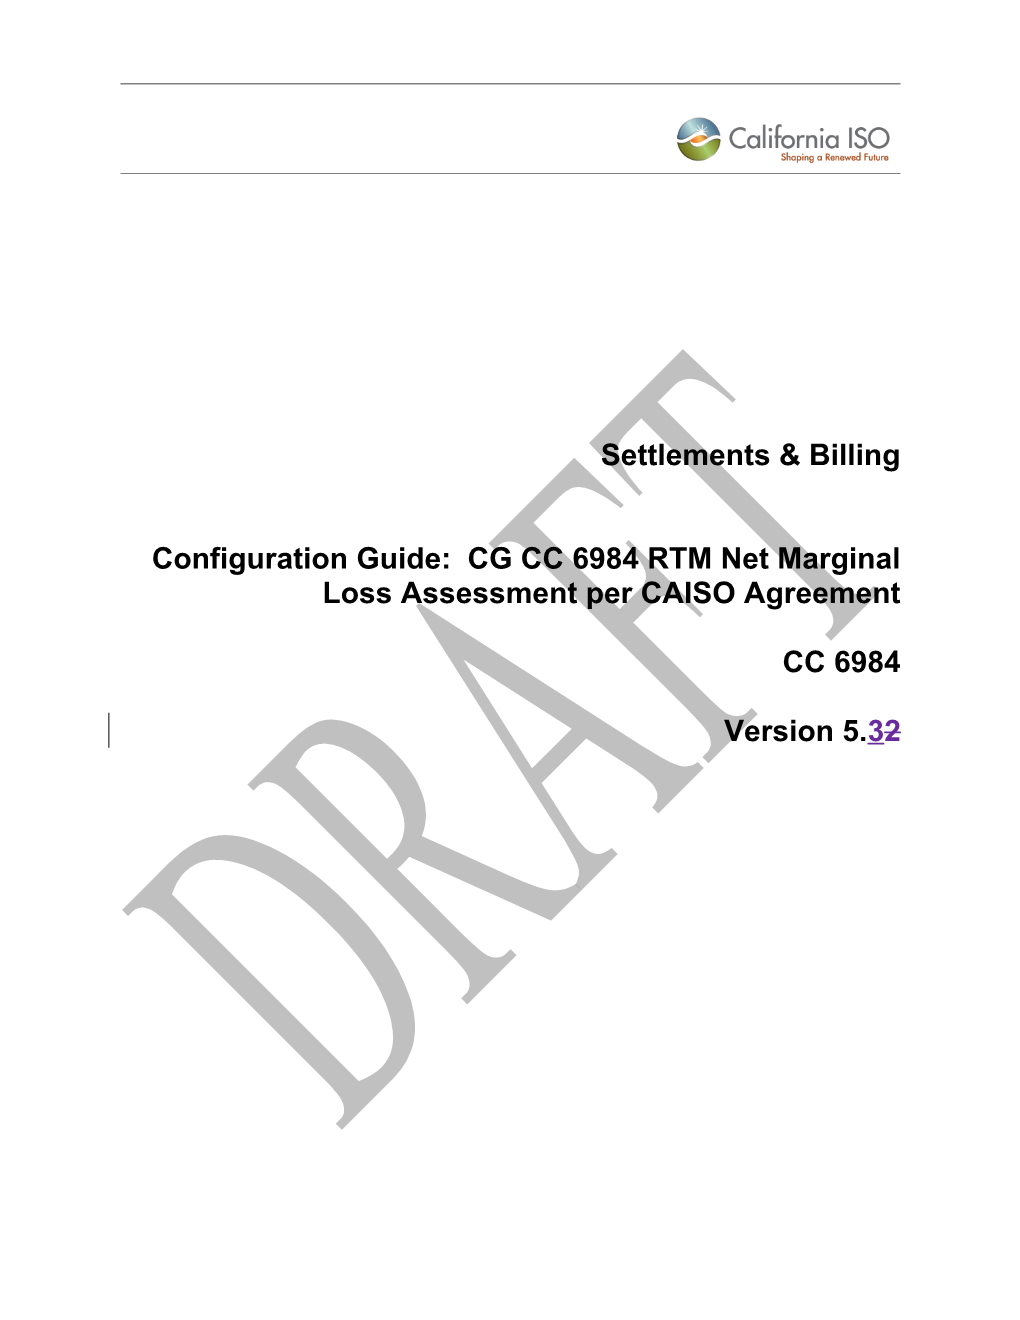 CG CC 6984 RTM Net Marginal Loss Assessment Per CAISO Agreement